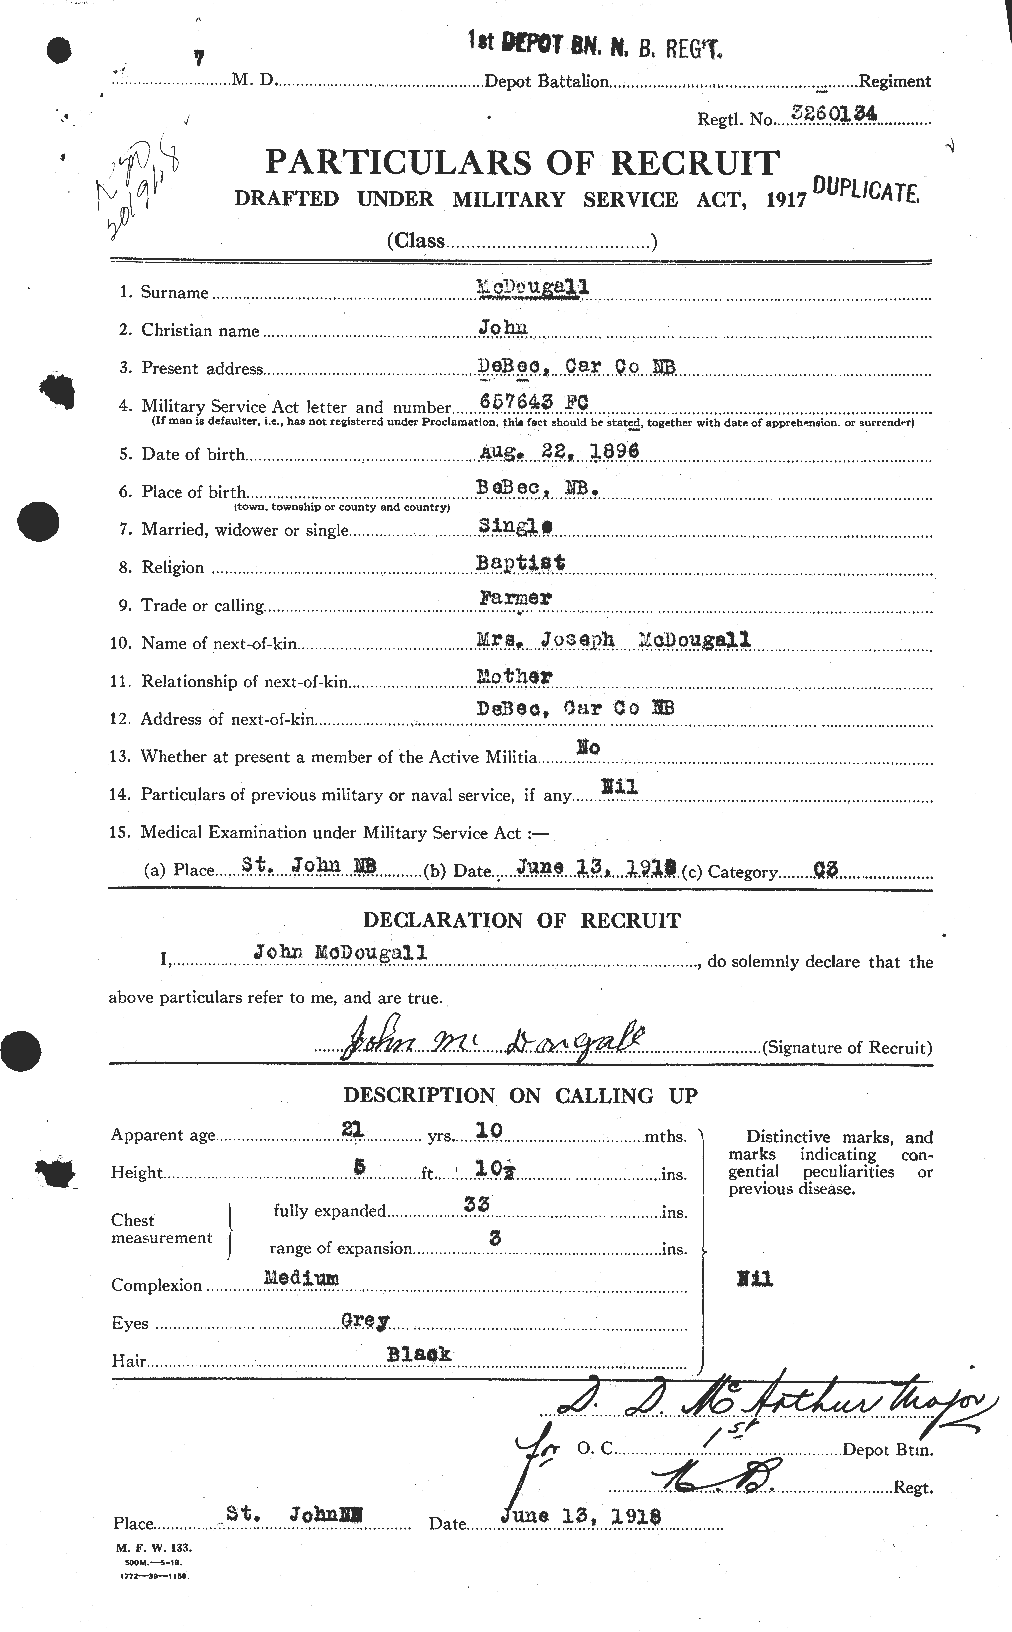 Dossiers du Personnel de la Première Guerre mondiale - CEC 518222a